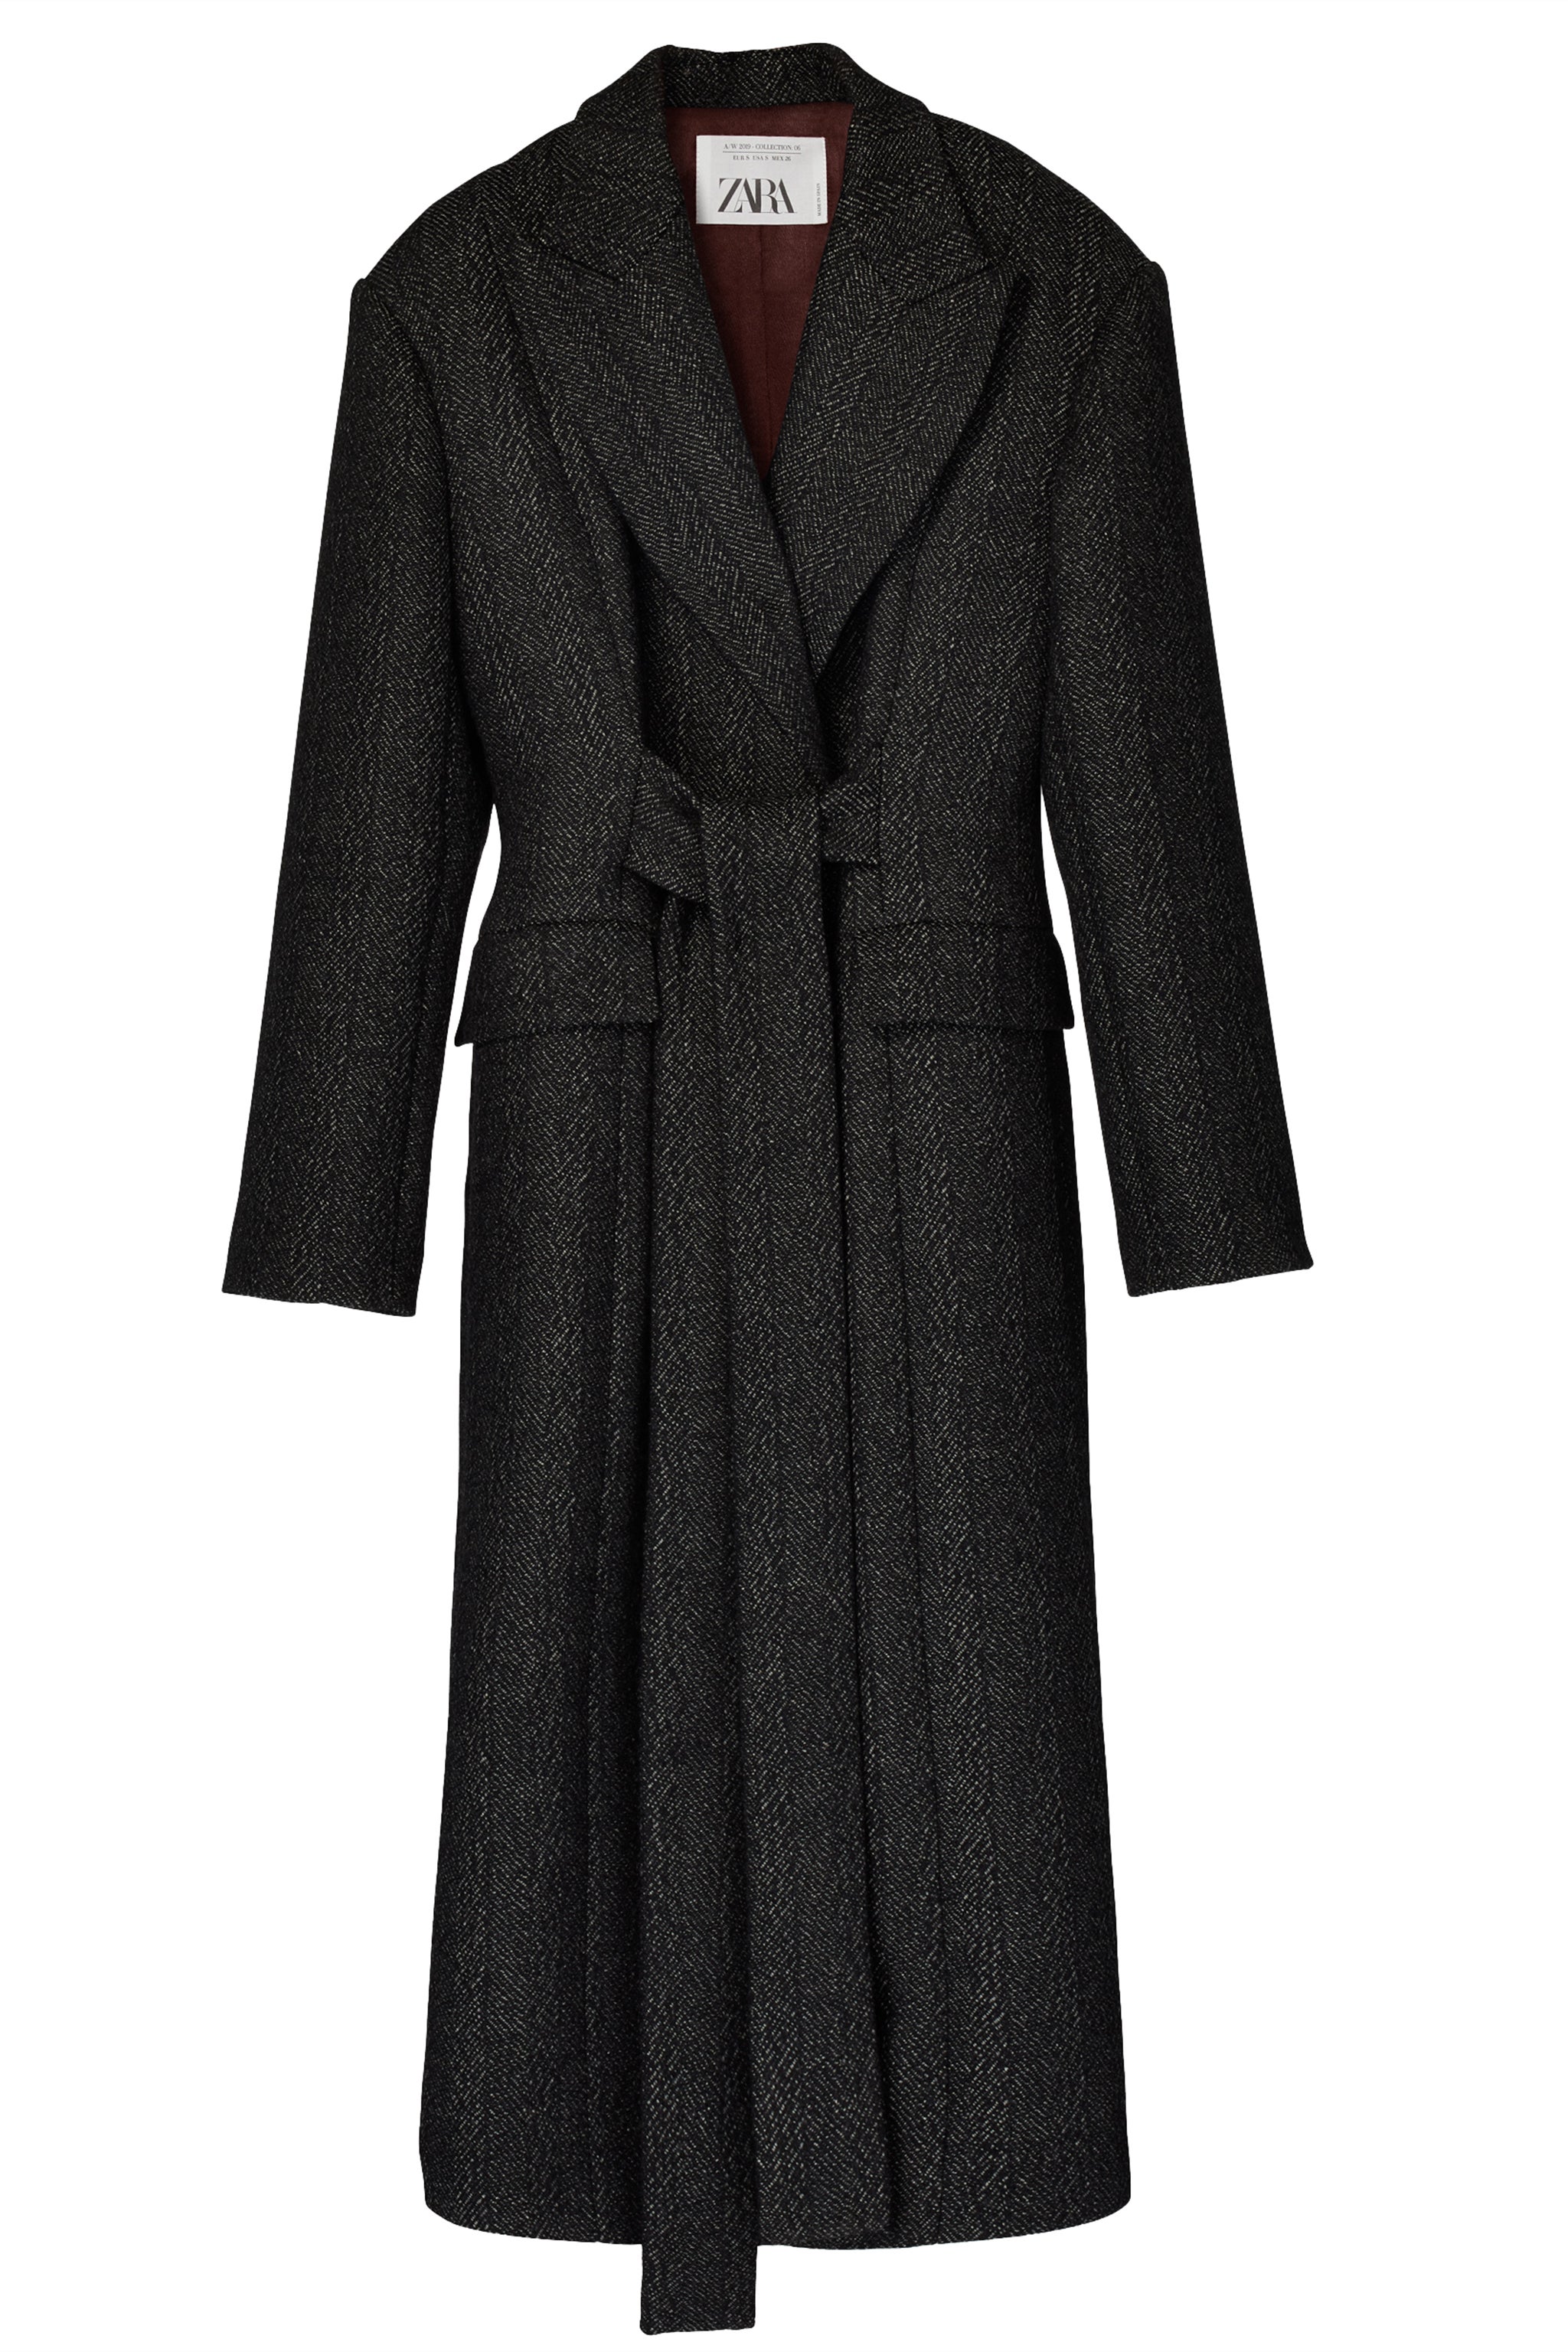 Zara Campaign + Belted Coat